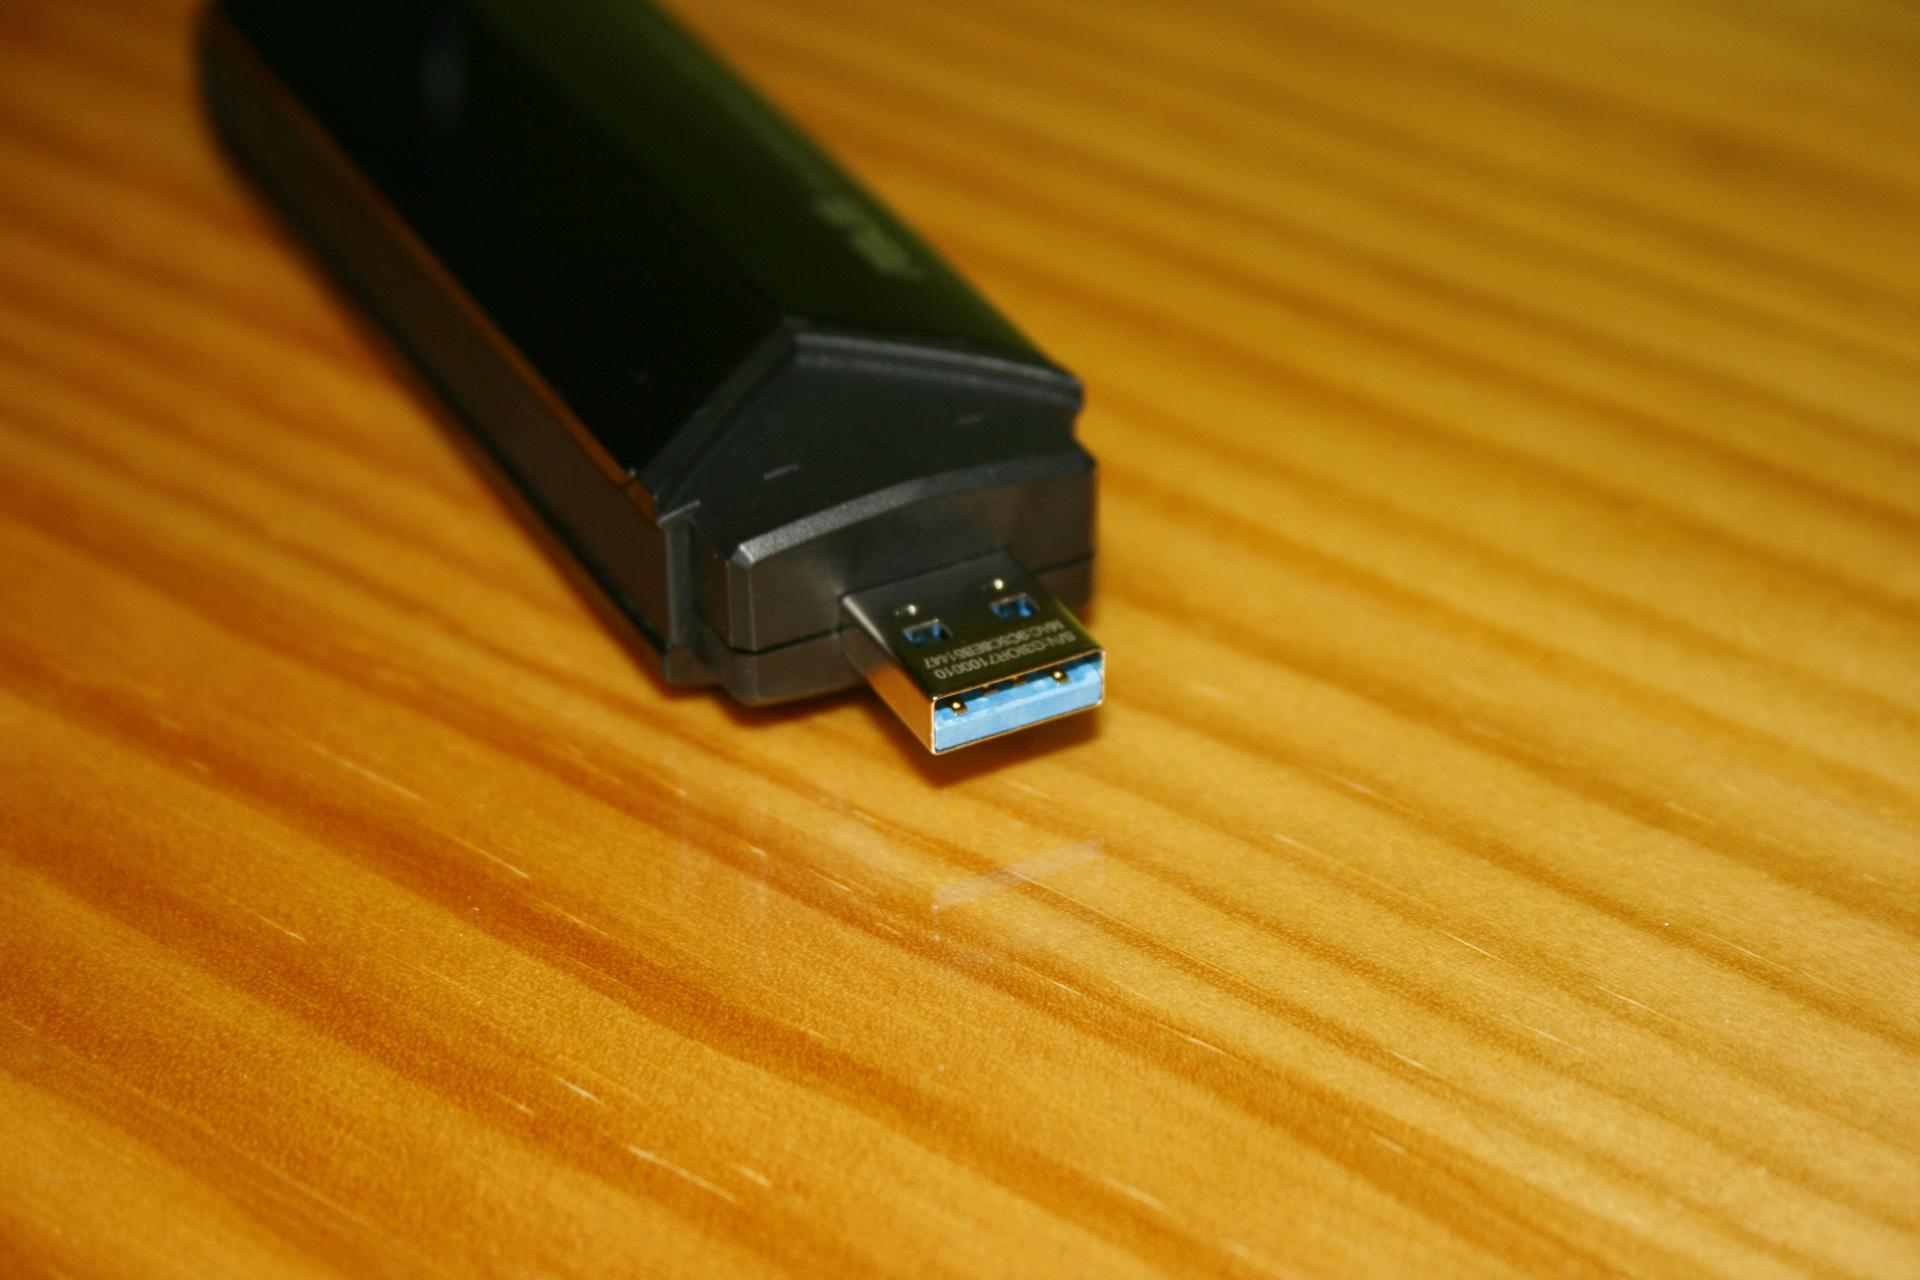 Asus usb c. ASUS USB-n53. USB 2.0 CRW. N53sm ASUS USB 3. USB-n66 ASUS драйвер.